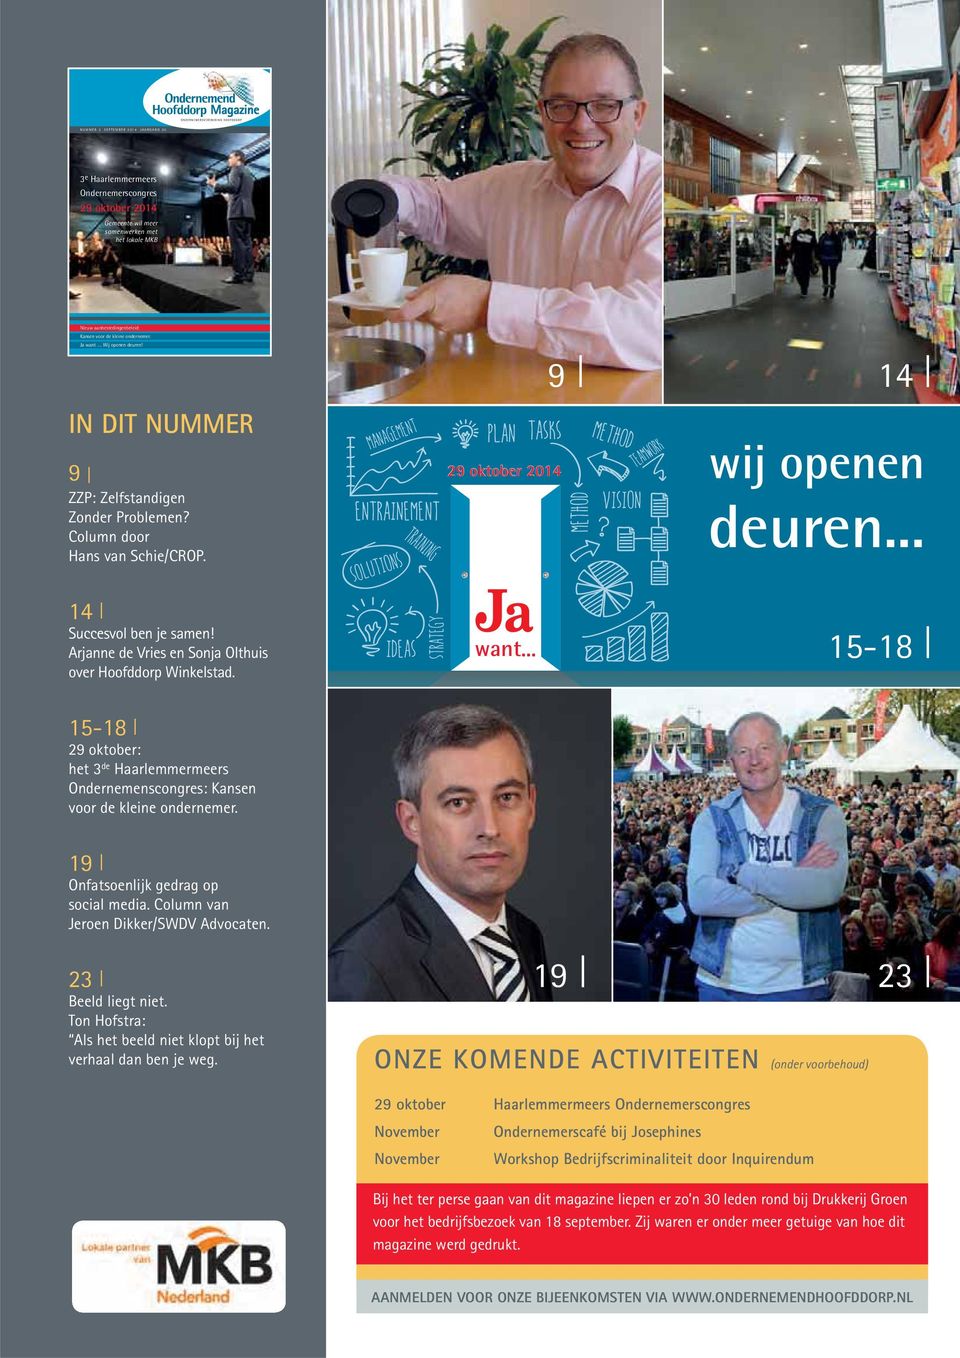 Arjanne de Vries en Sonja Olthuis over Hoofddorp Winkelstad. want... 15-18 15-18 29 oktober: het 3 de Haarlemmermeers Ondernemenscongres: Kansen voor de kleine ondernemer.